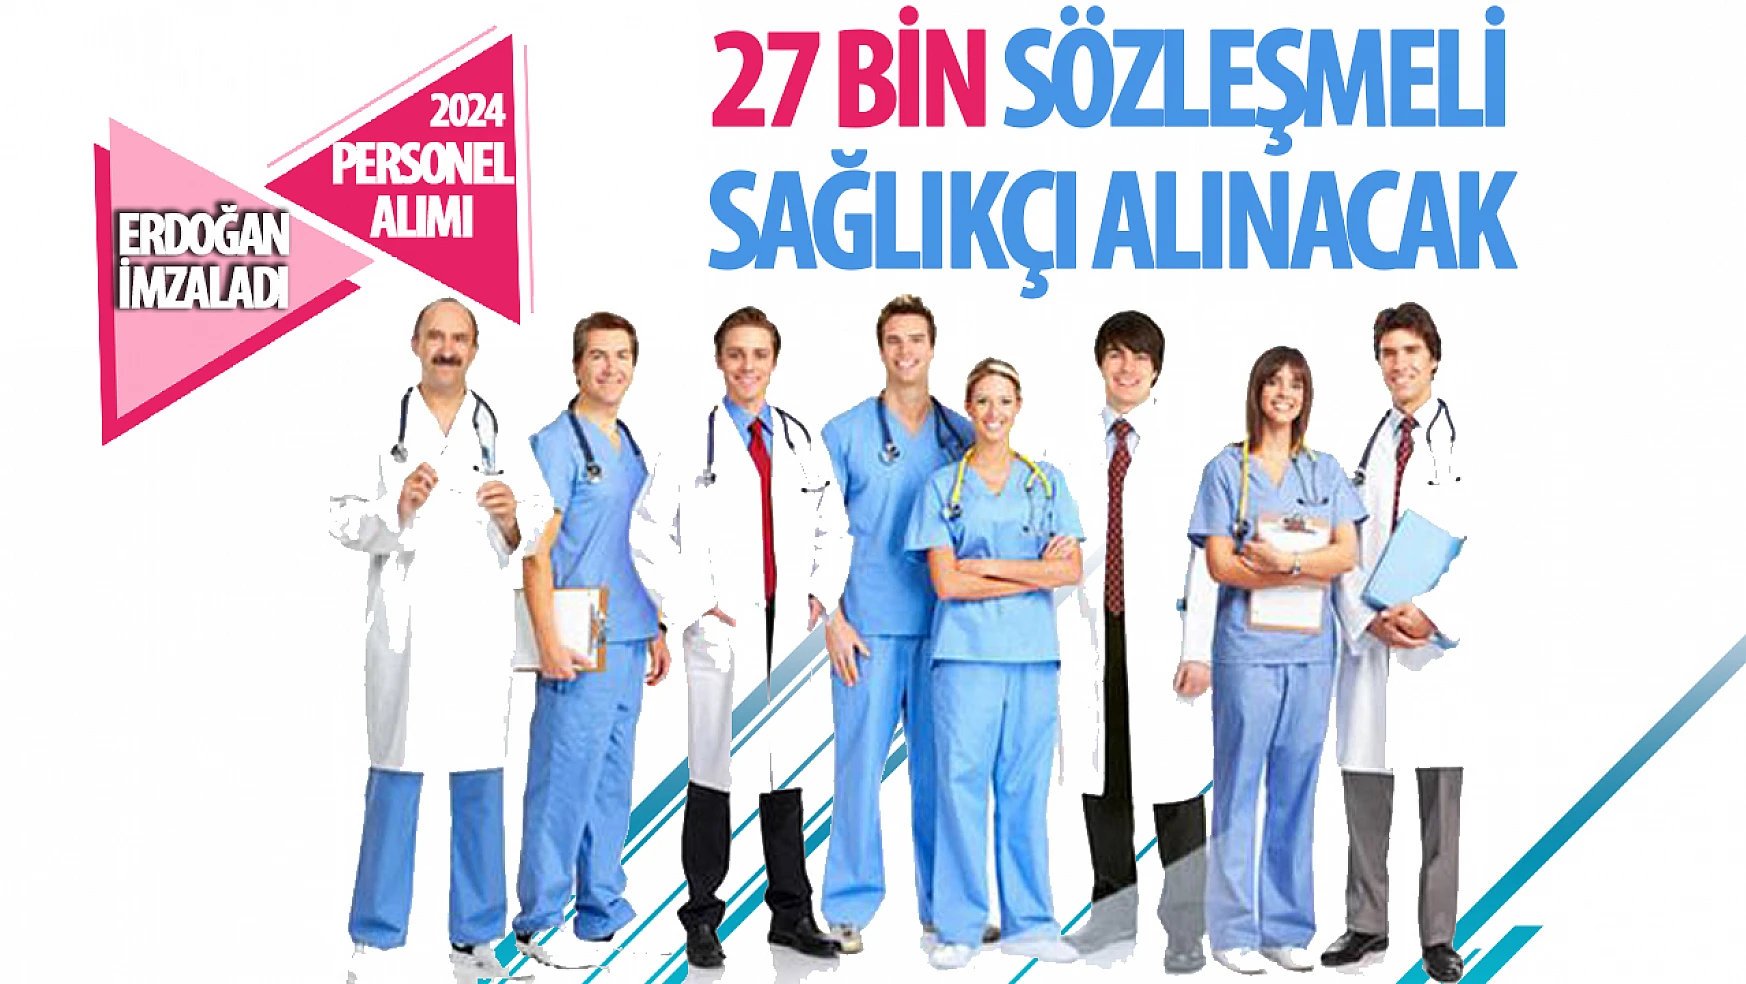 Cumhurbaşkanı Erdoğan'dan Sağlık Çalışanlarına Müjde: 27 Bin Sözleşmeli Personel Alınacak